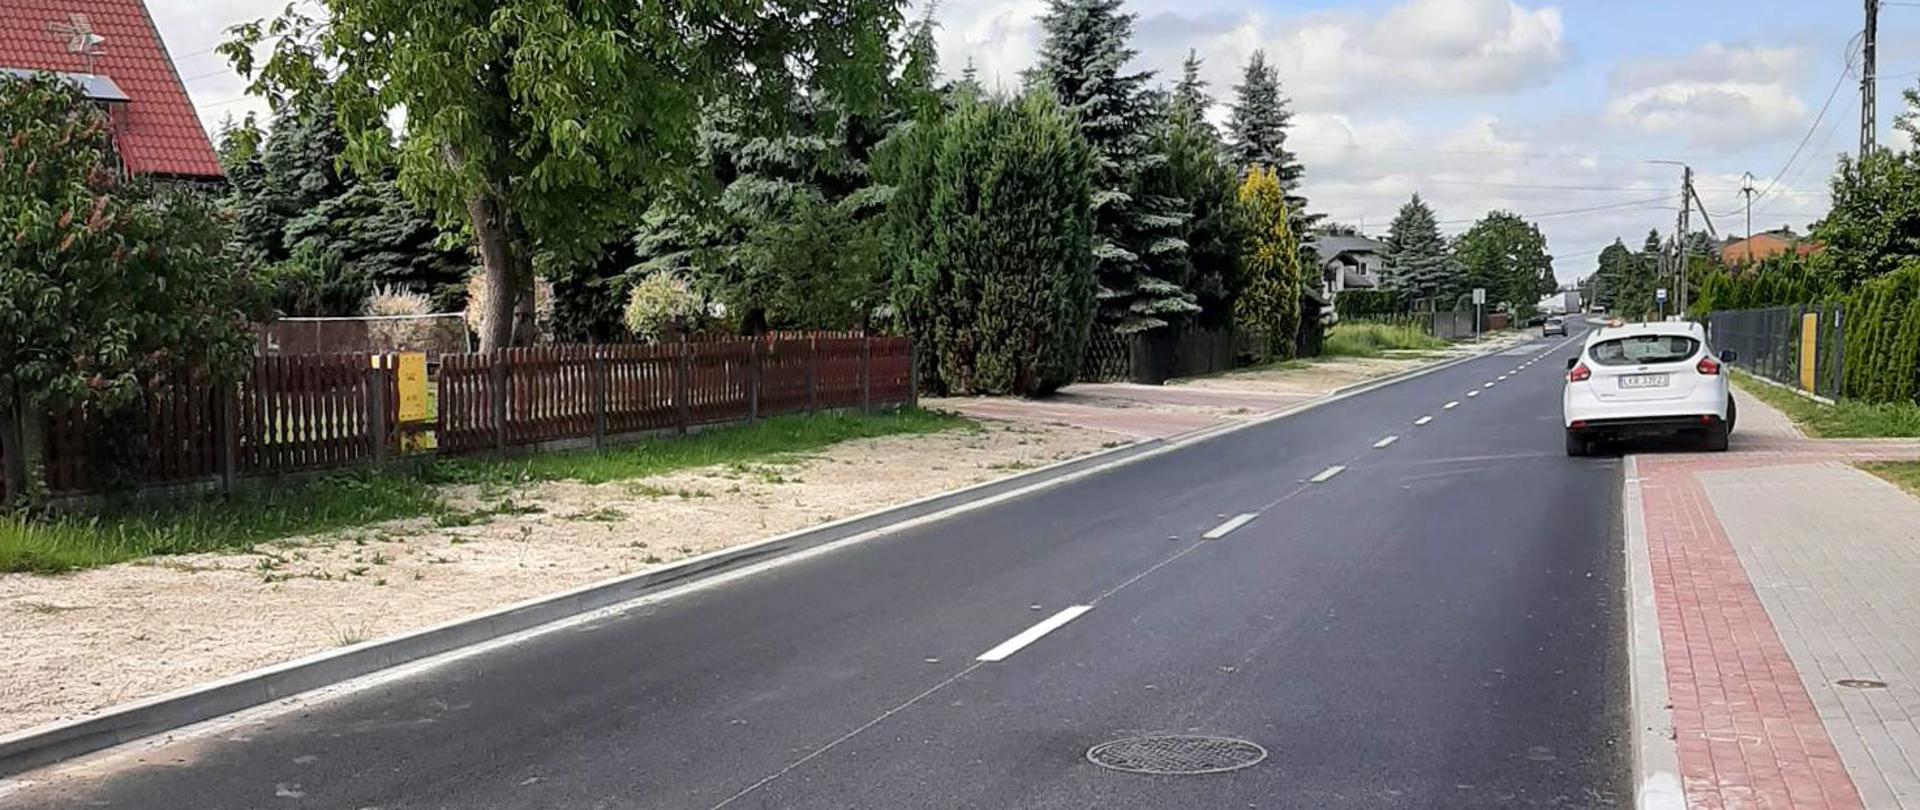 Zdjęcie przedstawia nawierzchnię nowo wyremontowanej drogi. Przy drodze znajduje się nowy chodnik z kostki brukowej przy którym stoi zaparkowane białe auto. W tle znajdują się drzewa i ogrody pobliskich zabudowań.